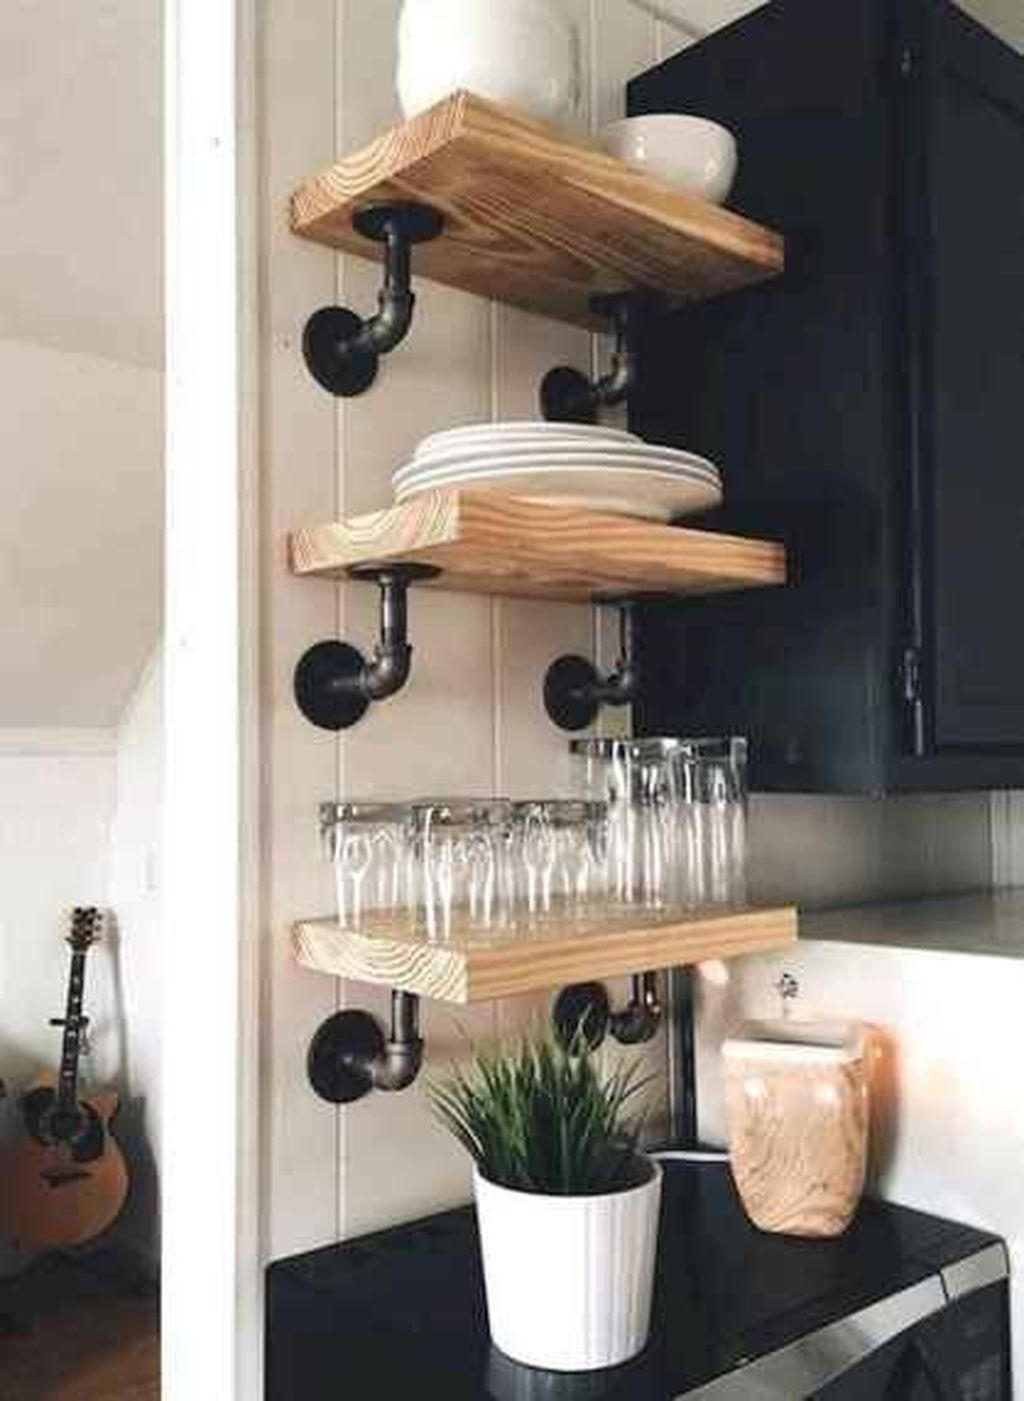 Wonderful Industrial Kitchen Shelf Design Ideas To Organize Your Kitchen09